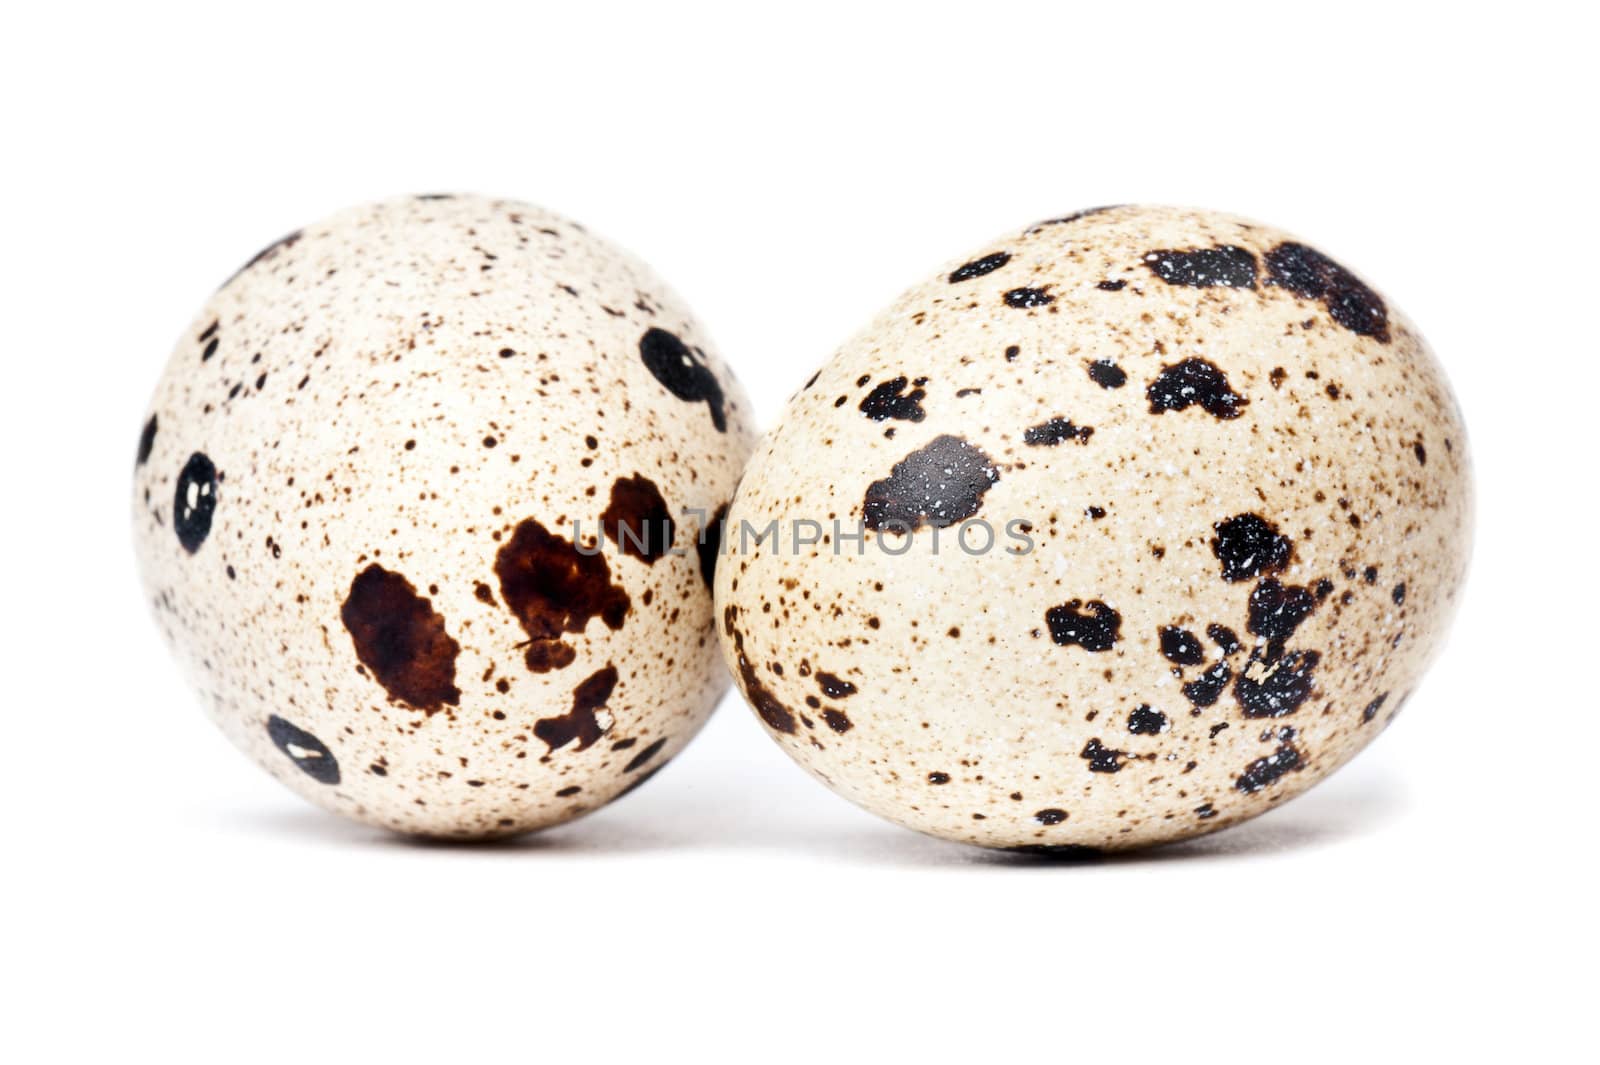 Quail eggs by Viktorus